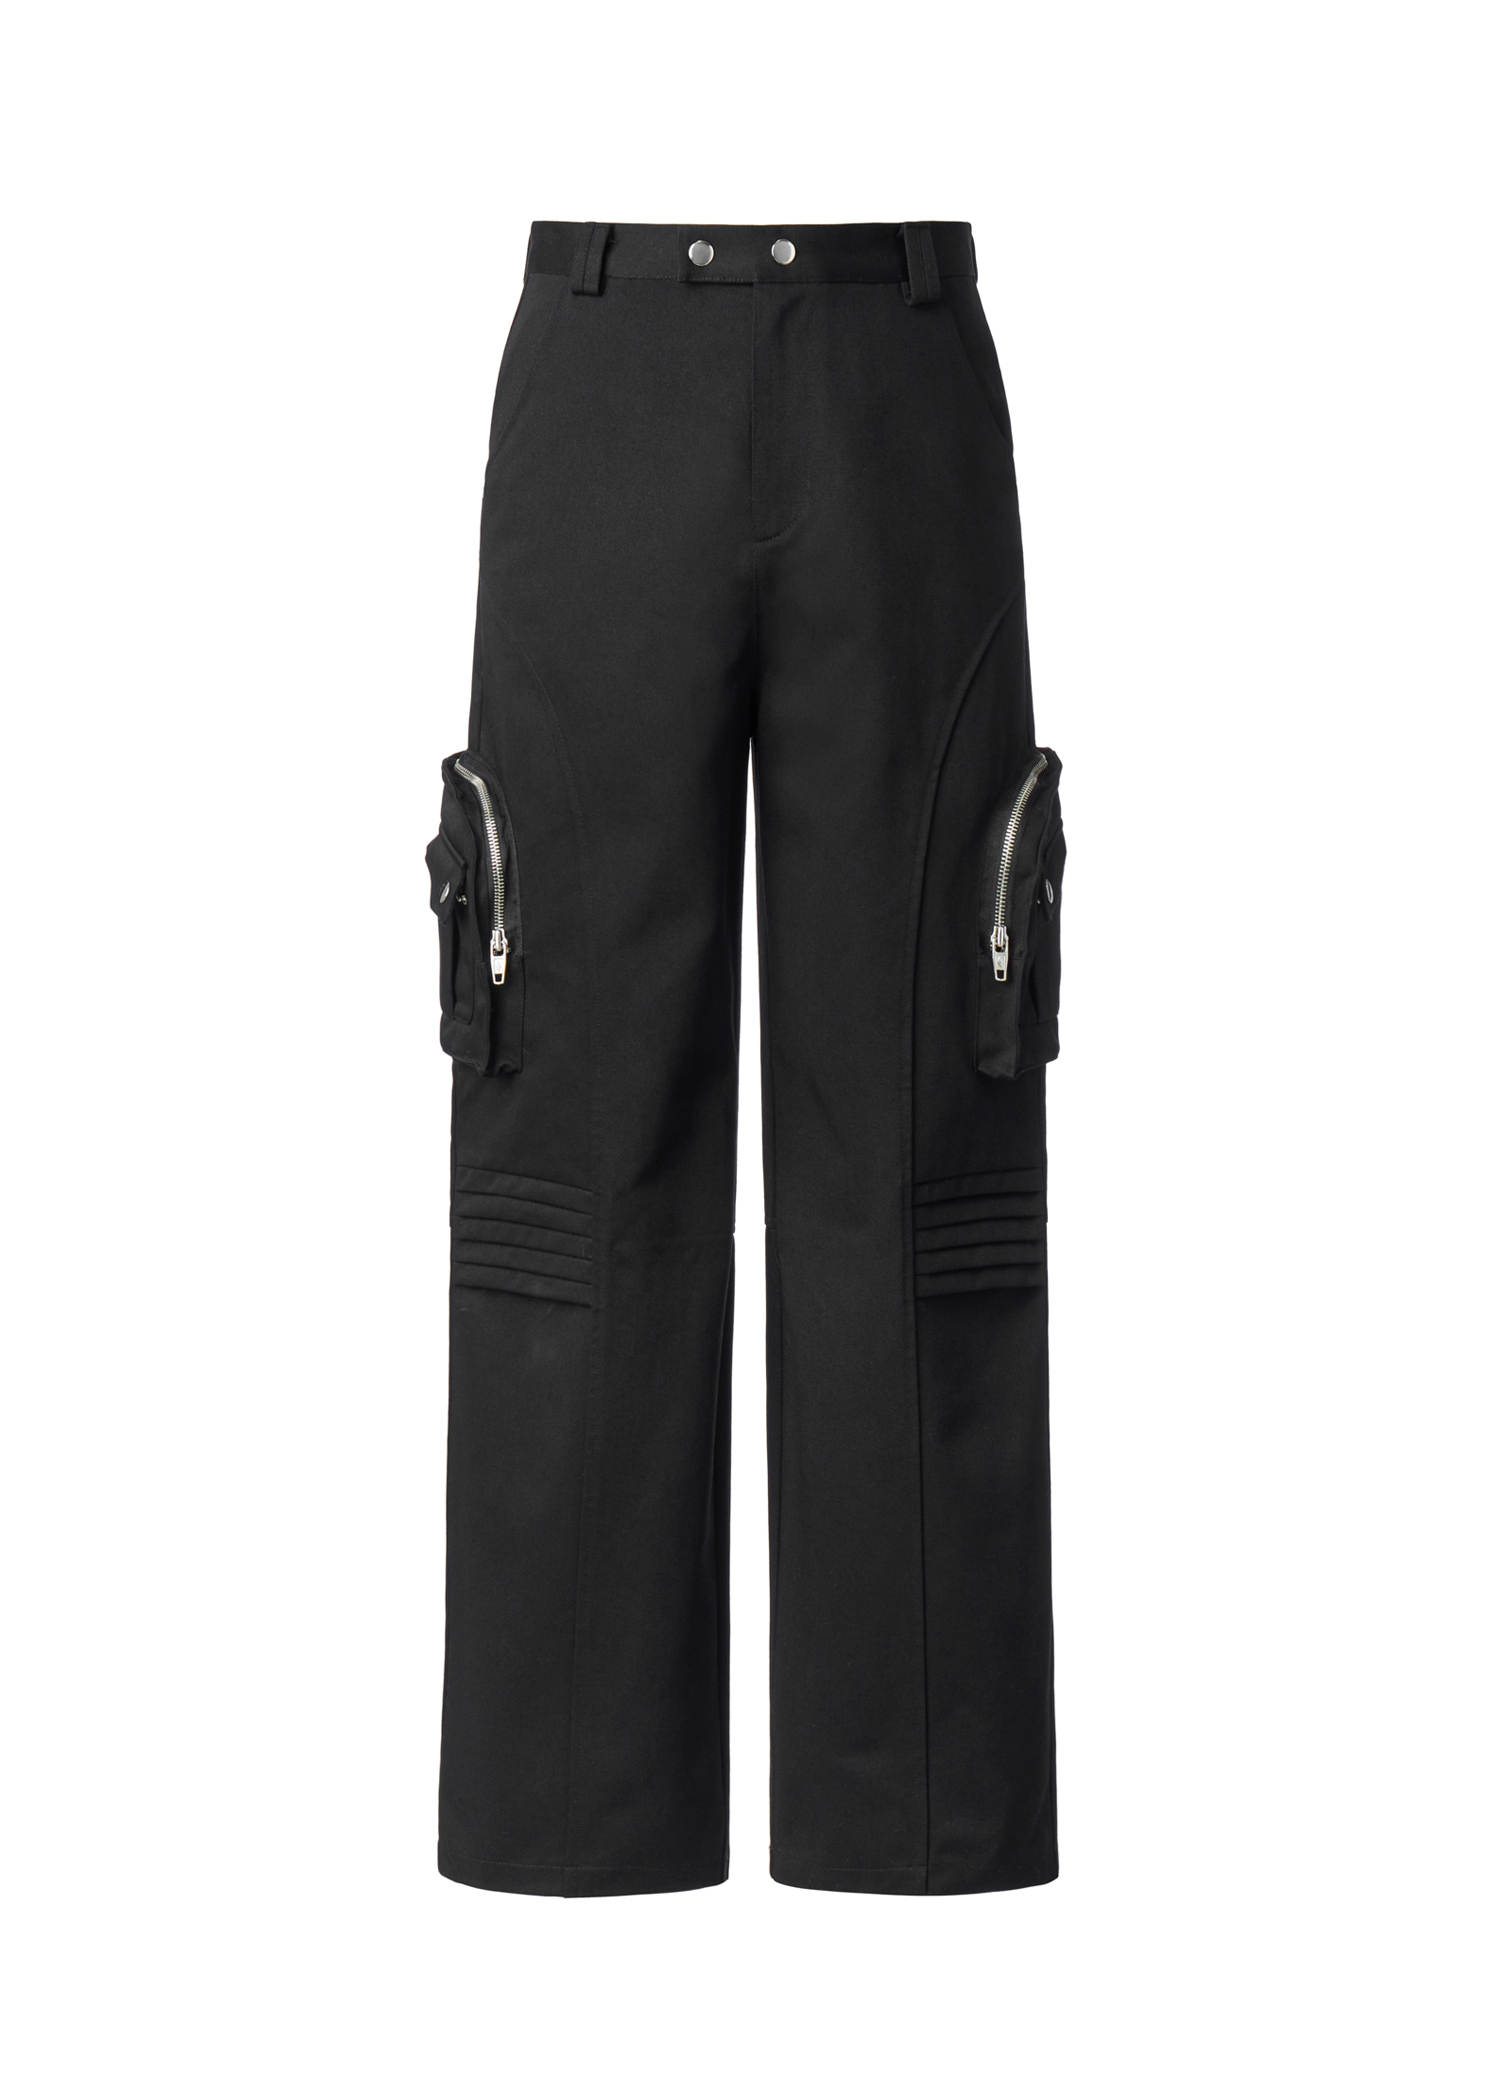 004-23 side pocket pants - black